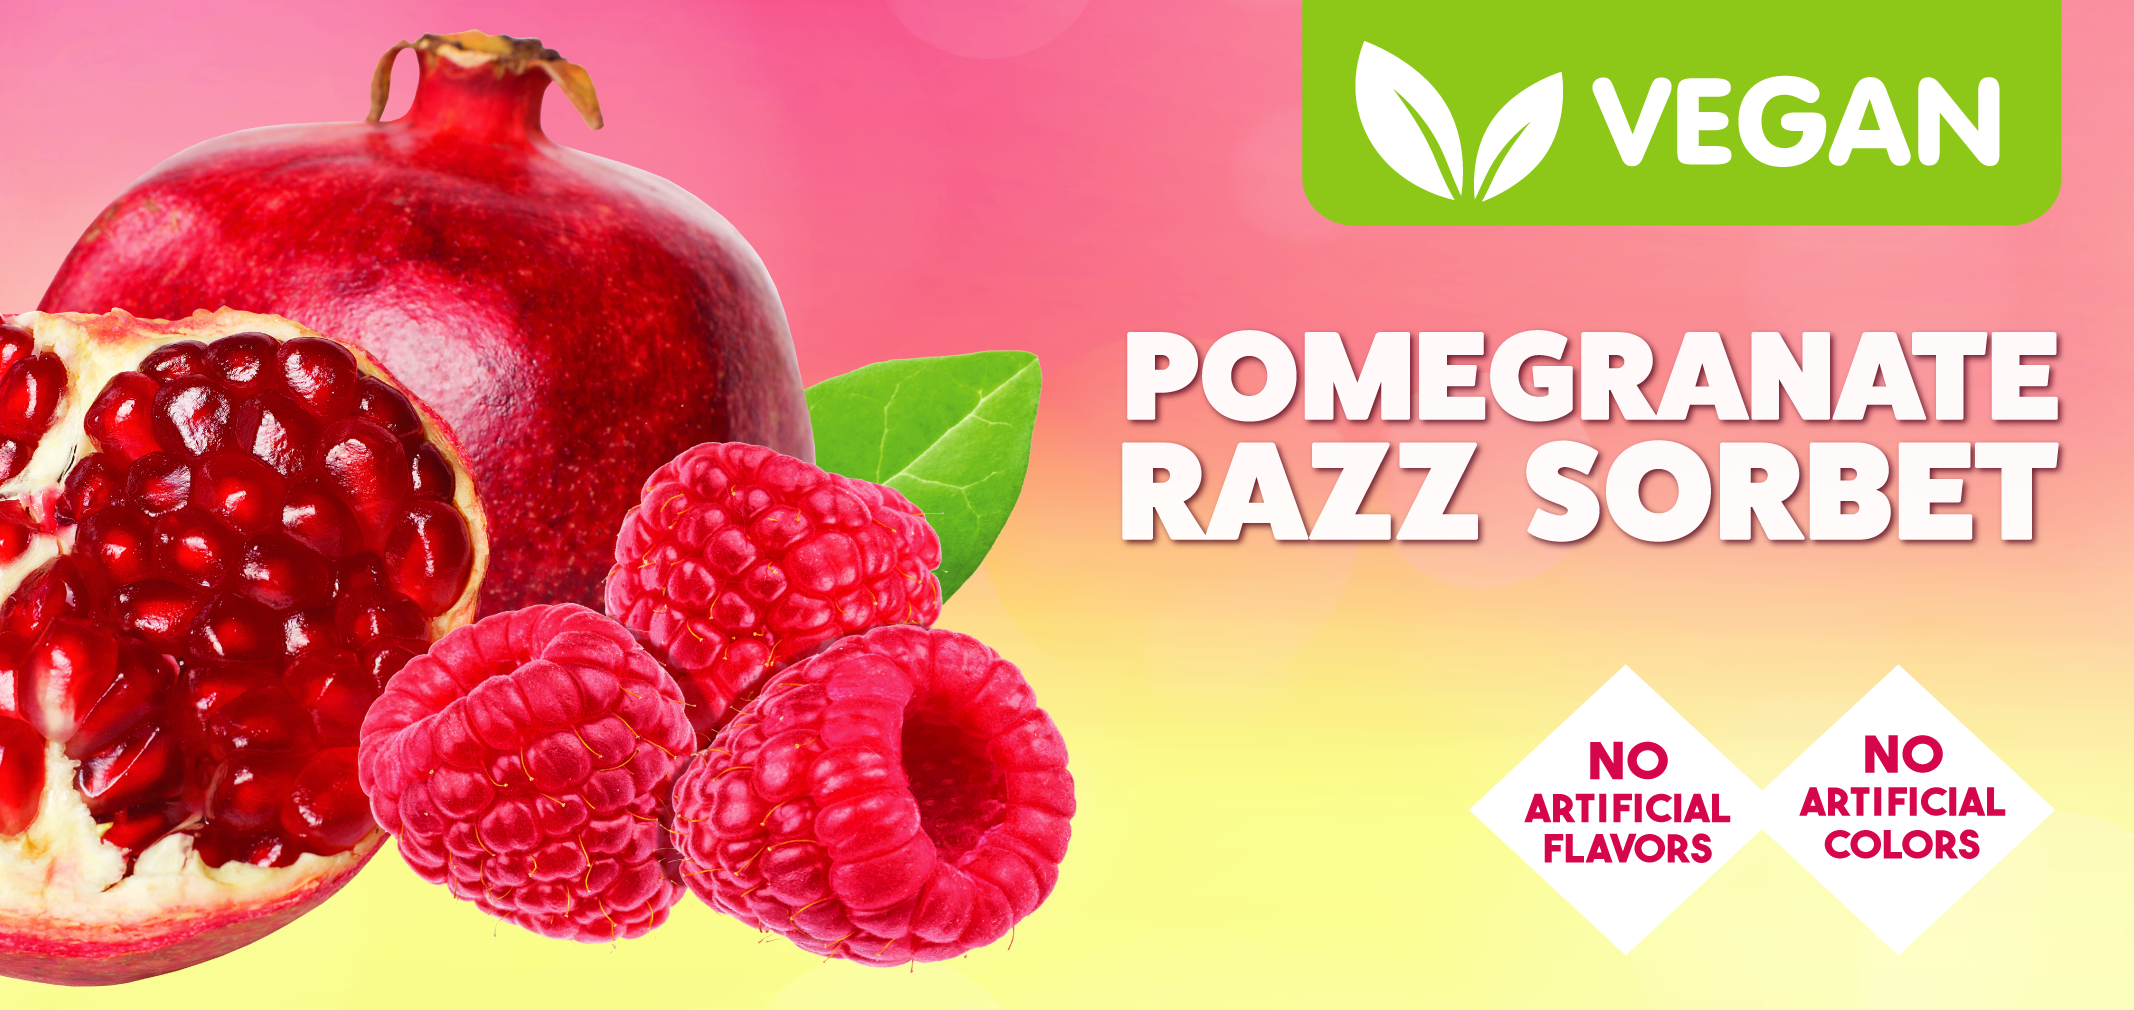 Vegan Pomegranate Razz Sorbet label image